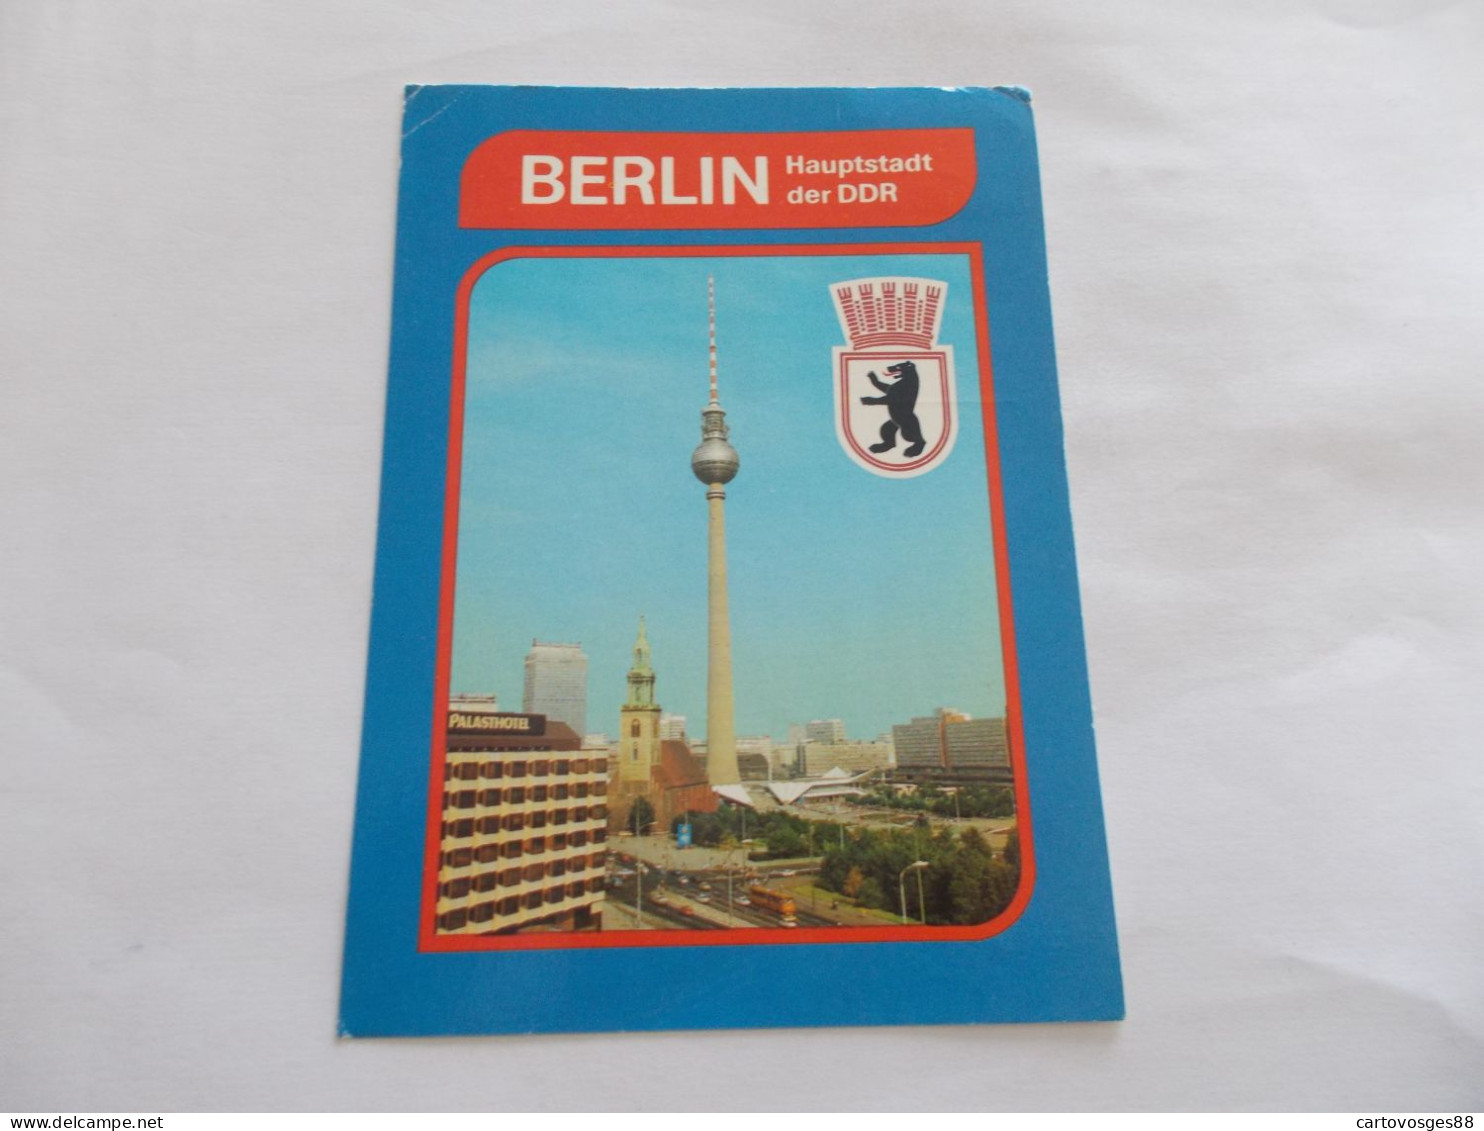 BERLIN   ( ALLEMAGNE GERMANY ) HAUPTSTADT DER DDR  STADTZENTRUM PALASHOTEL AU 1er PLAN - Brandenburger Deur